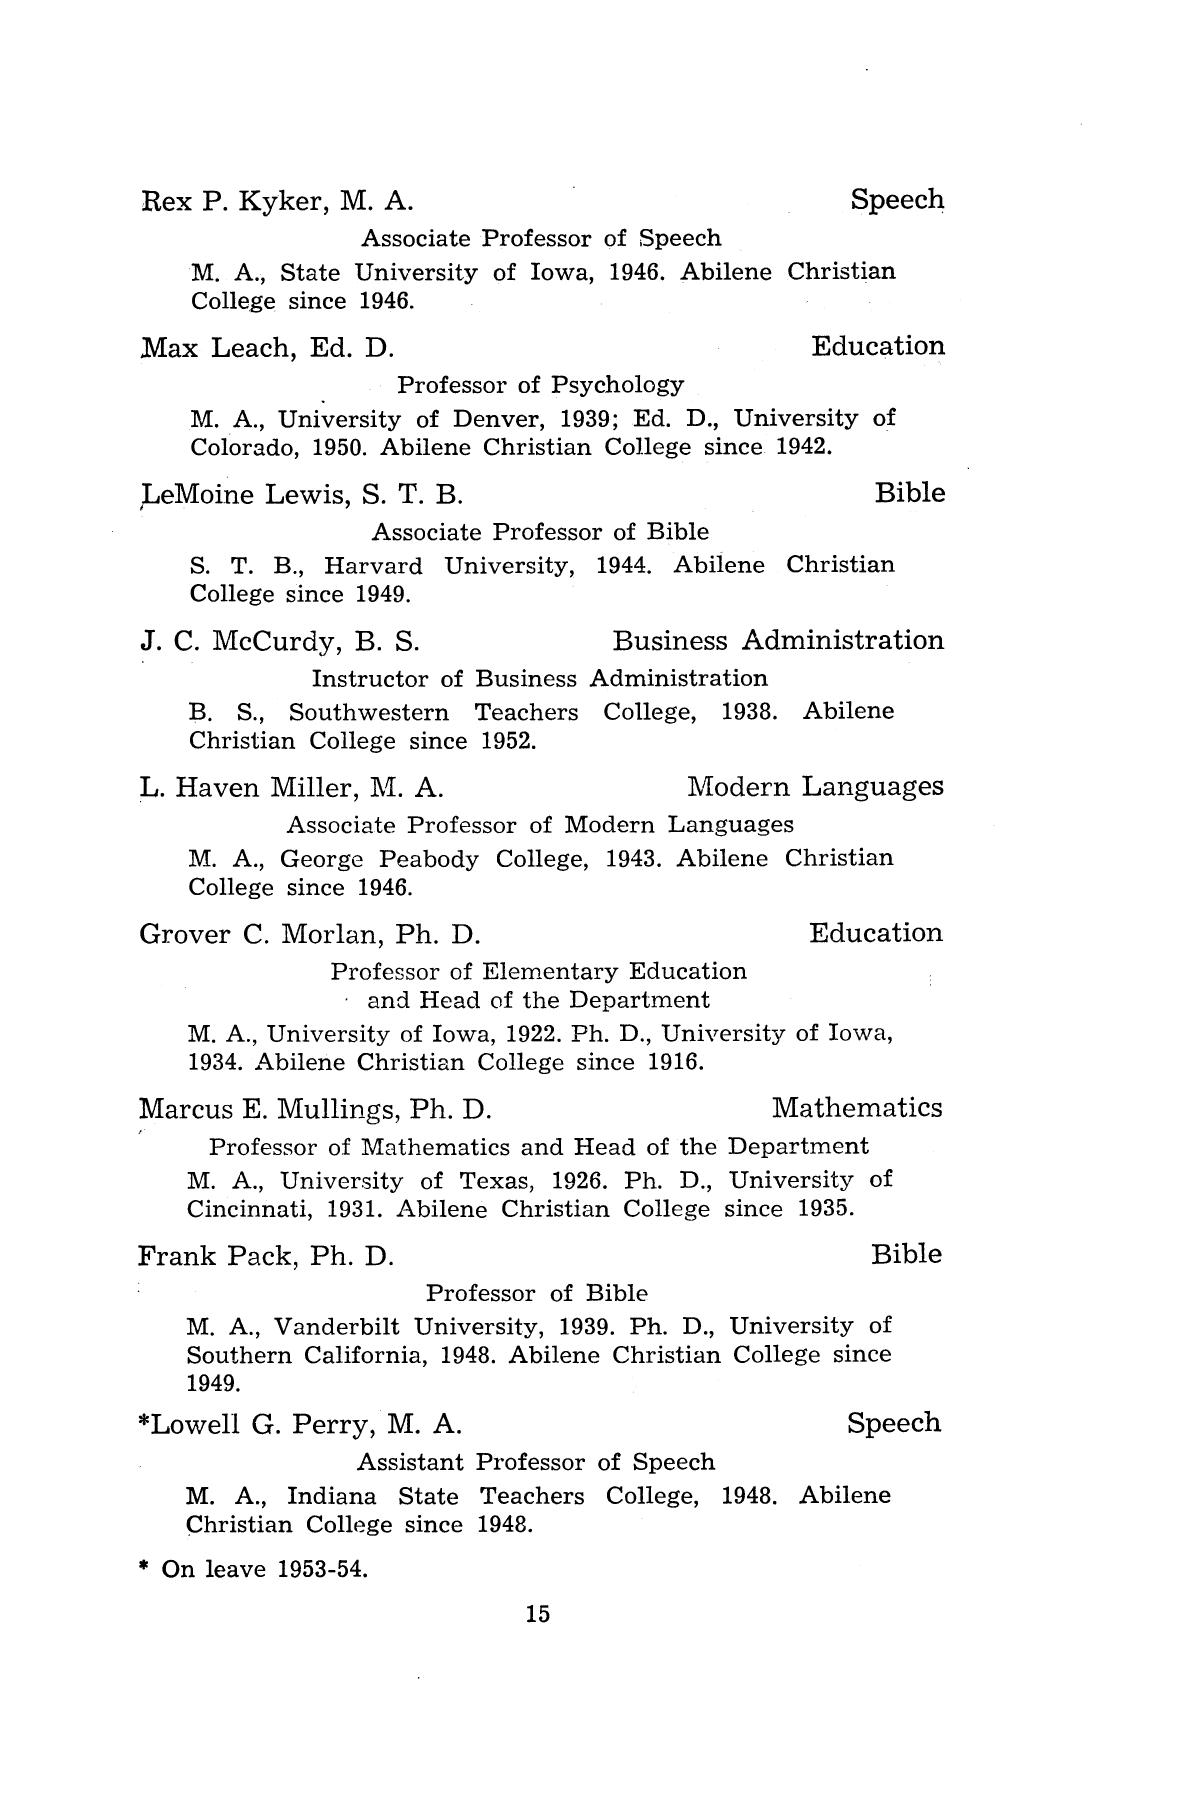 Catalog of Abilene Christian College, 1953-1954
                                                
                                                    15
                                                